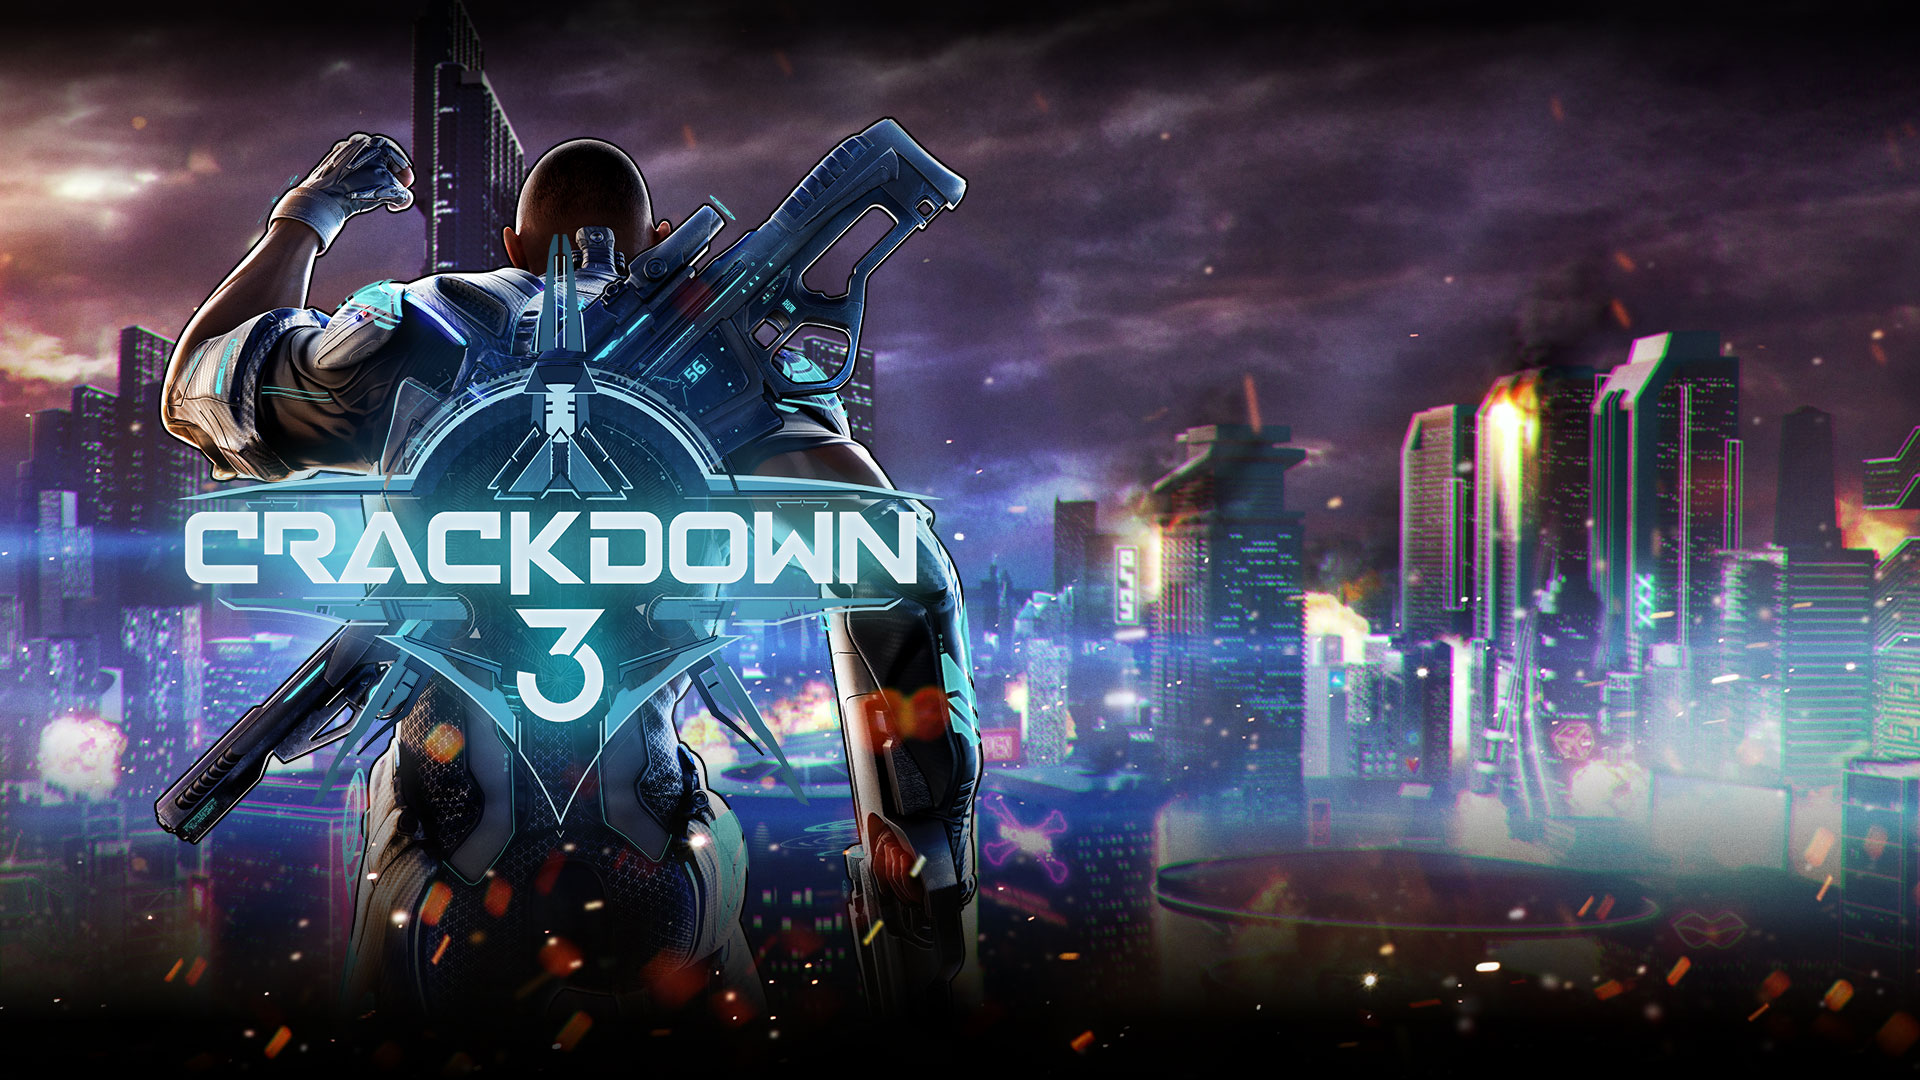 Crackdown 3, Commander Jaxon raises his fist over a city scene.